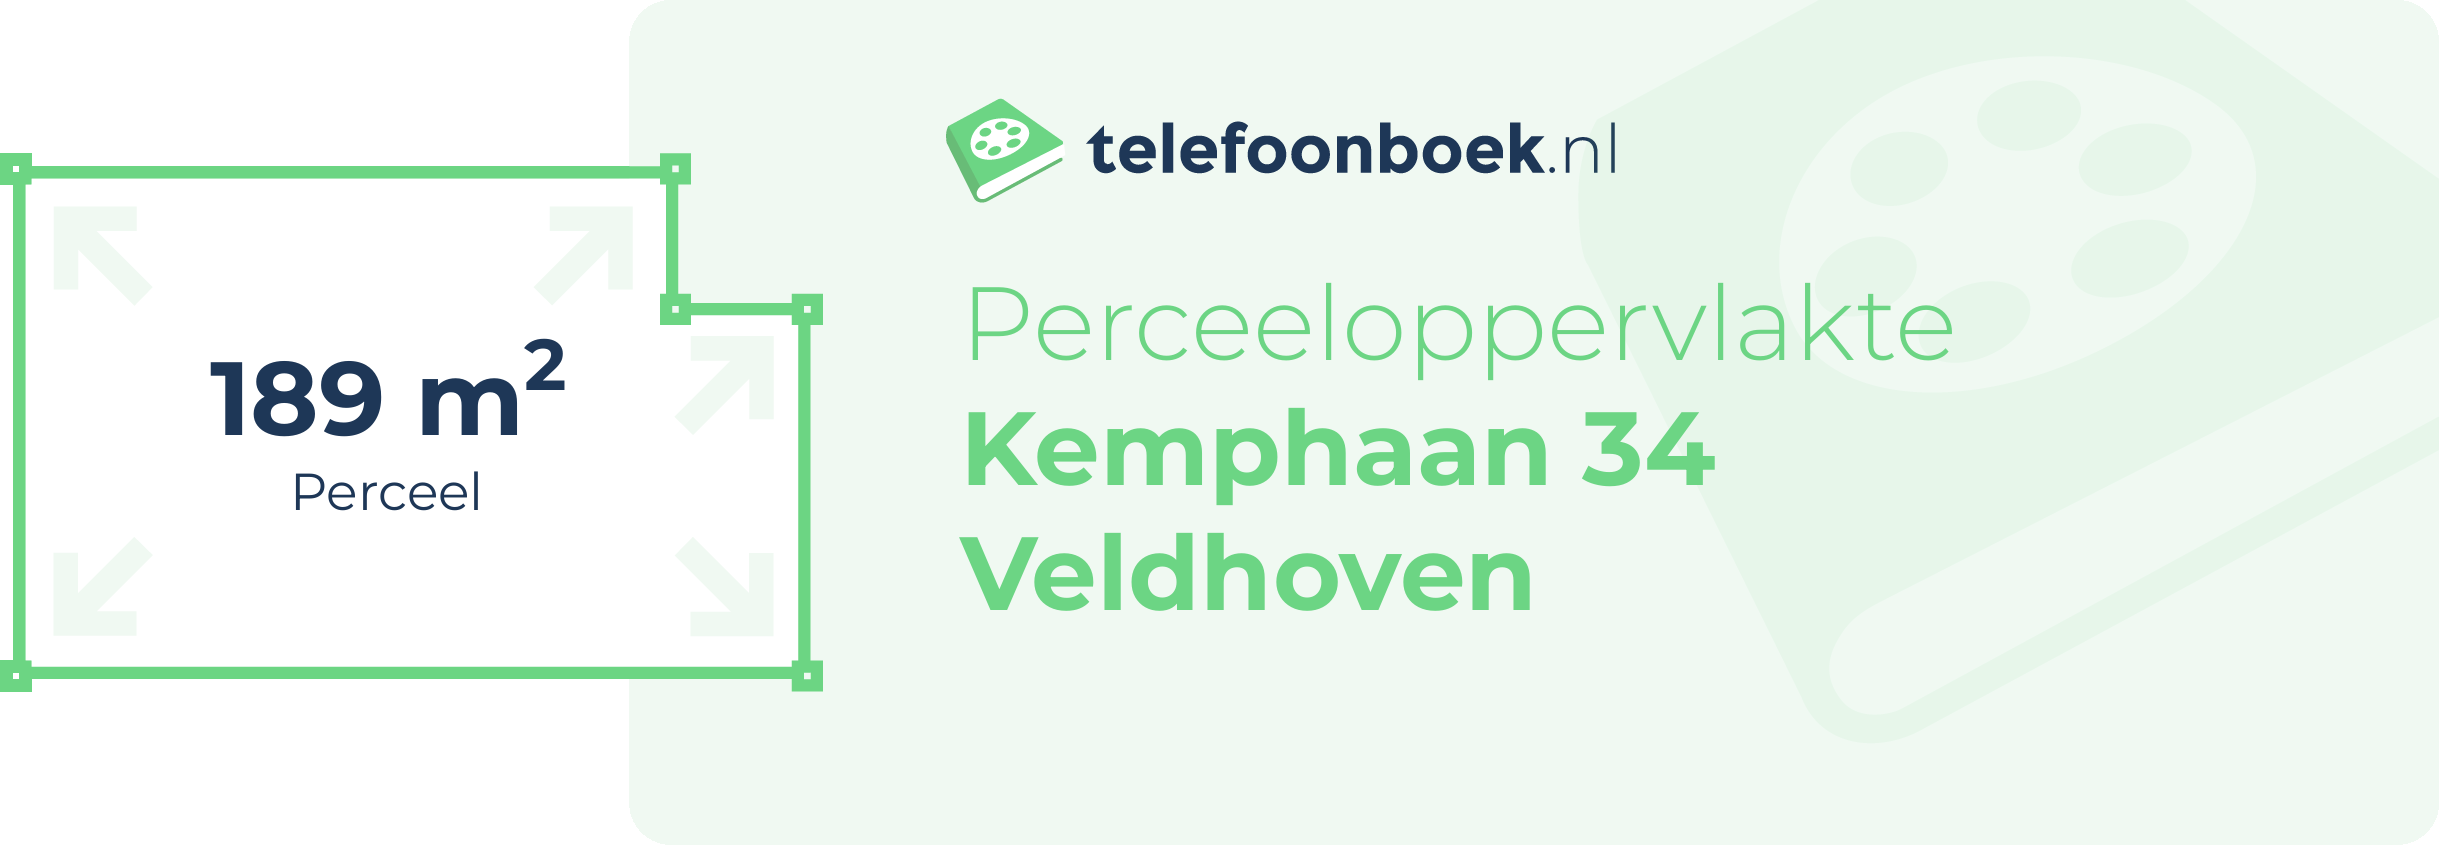 Perceeloppervlakte Kemphaan 34 Veldhoven